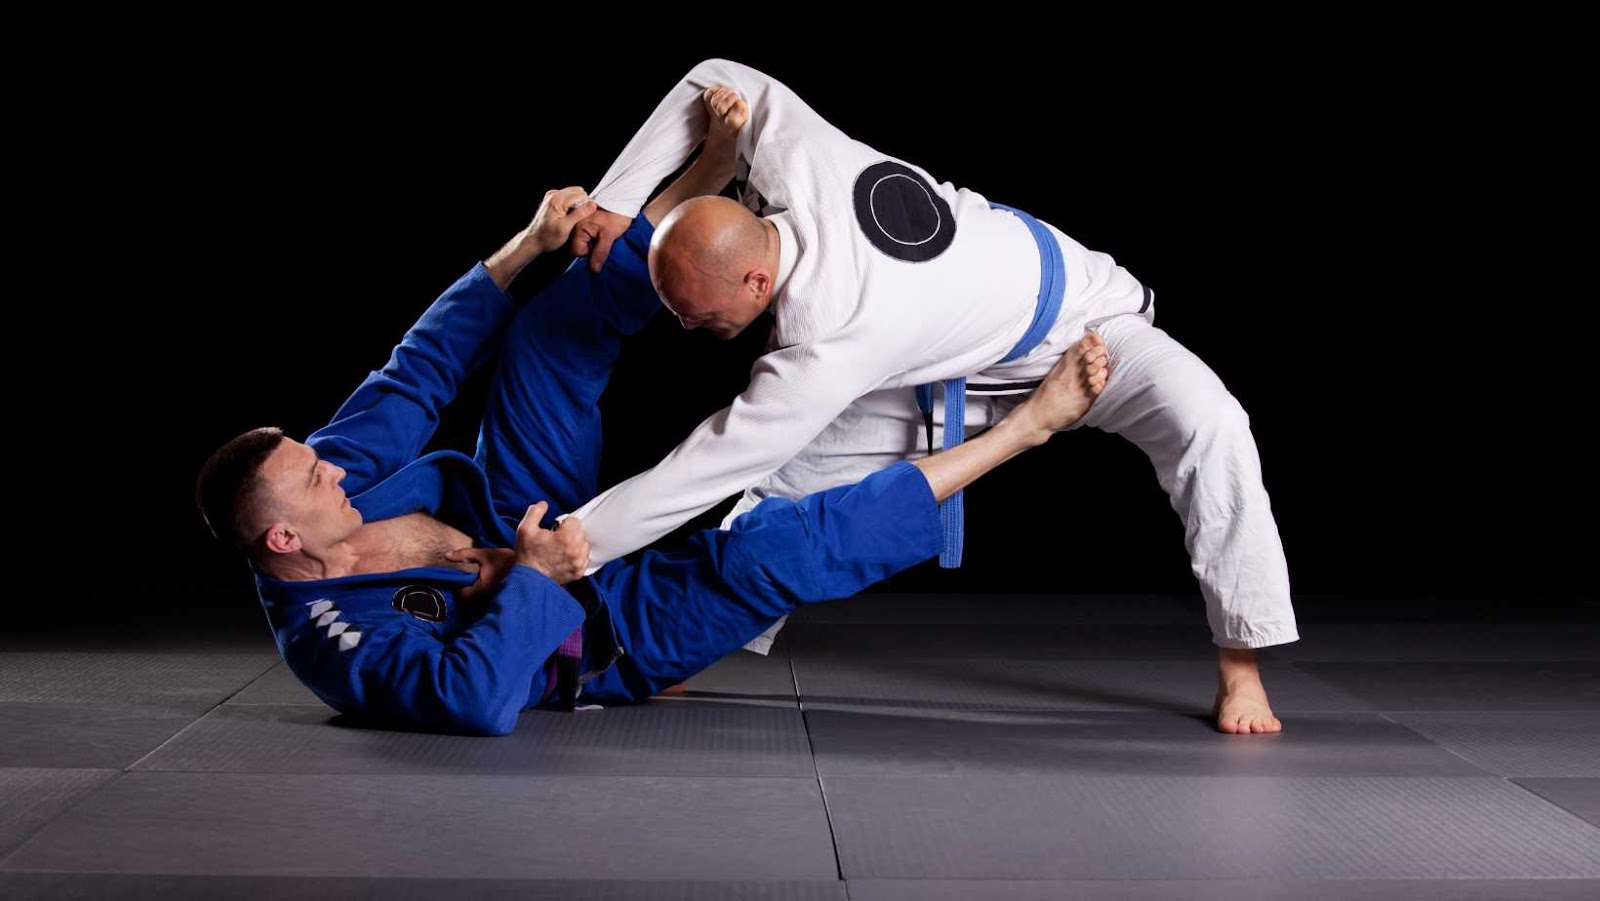 Harrison vs France 2016 Olympics Judo